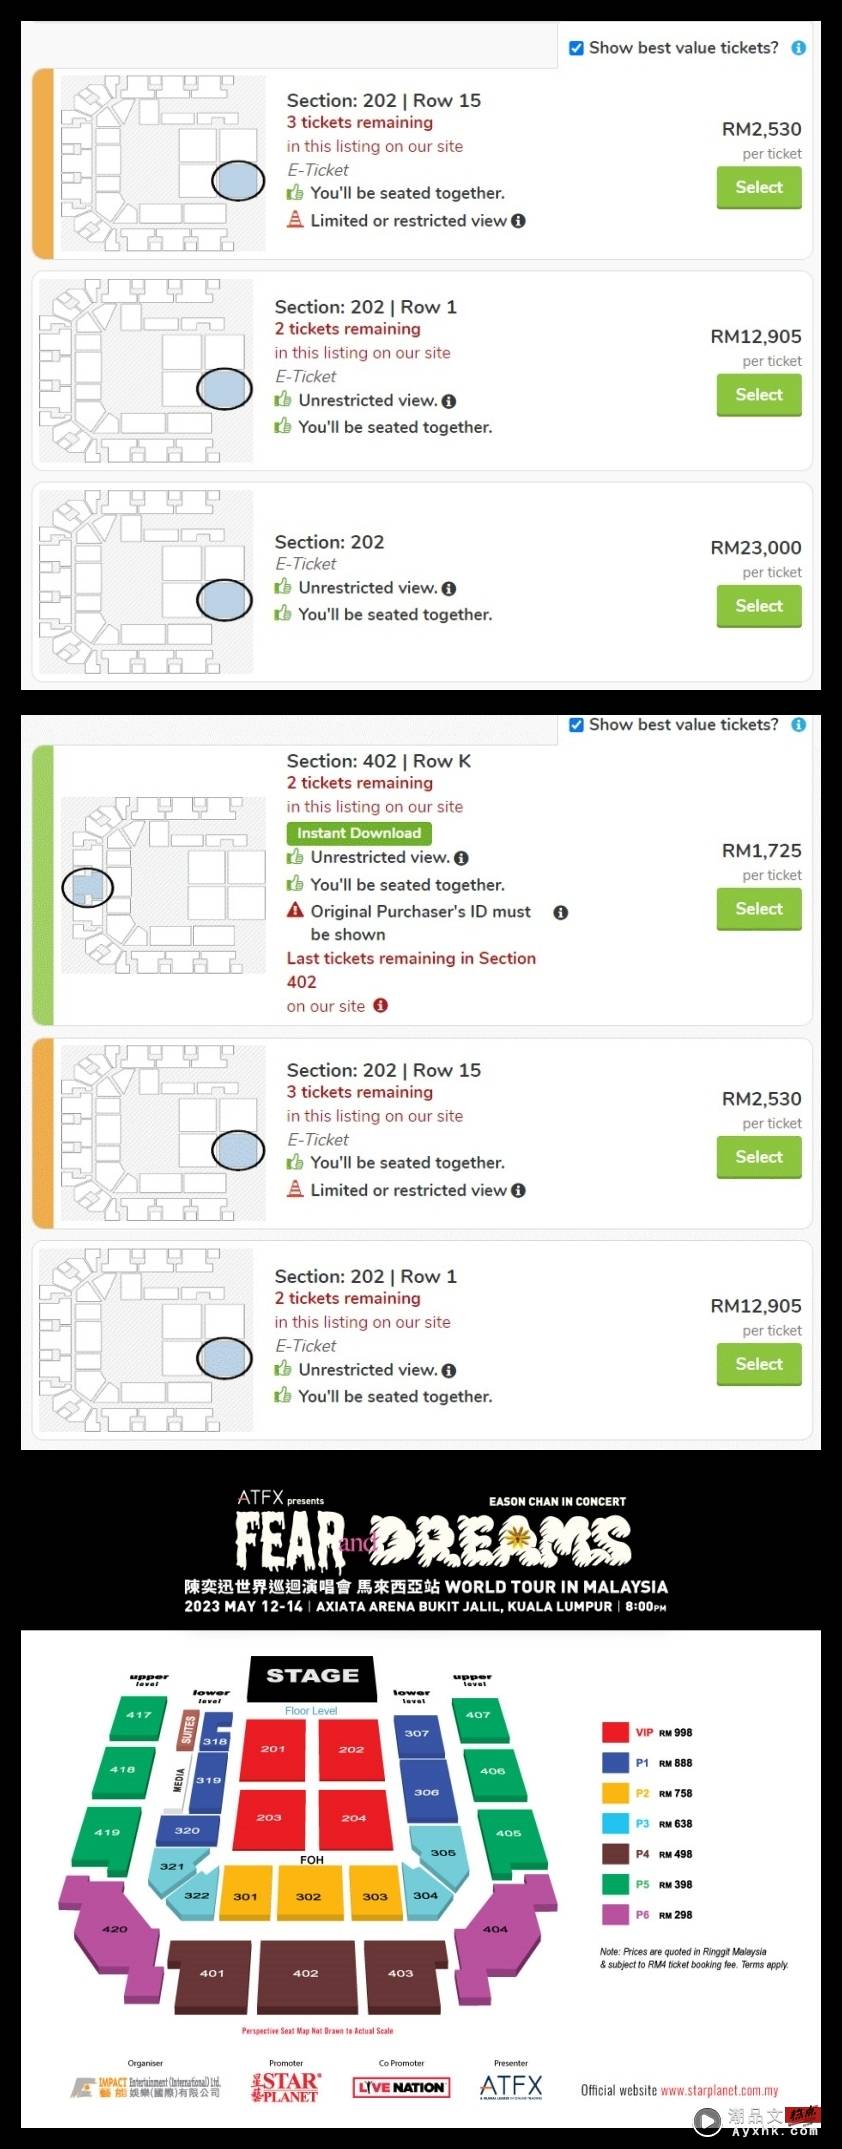 太猖狂！陈奕迅马来西亚演唱会门票 被炒到RM23K！ 娱乐资讯 图1张